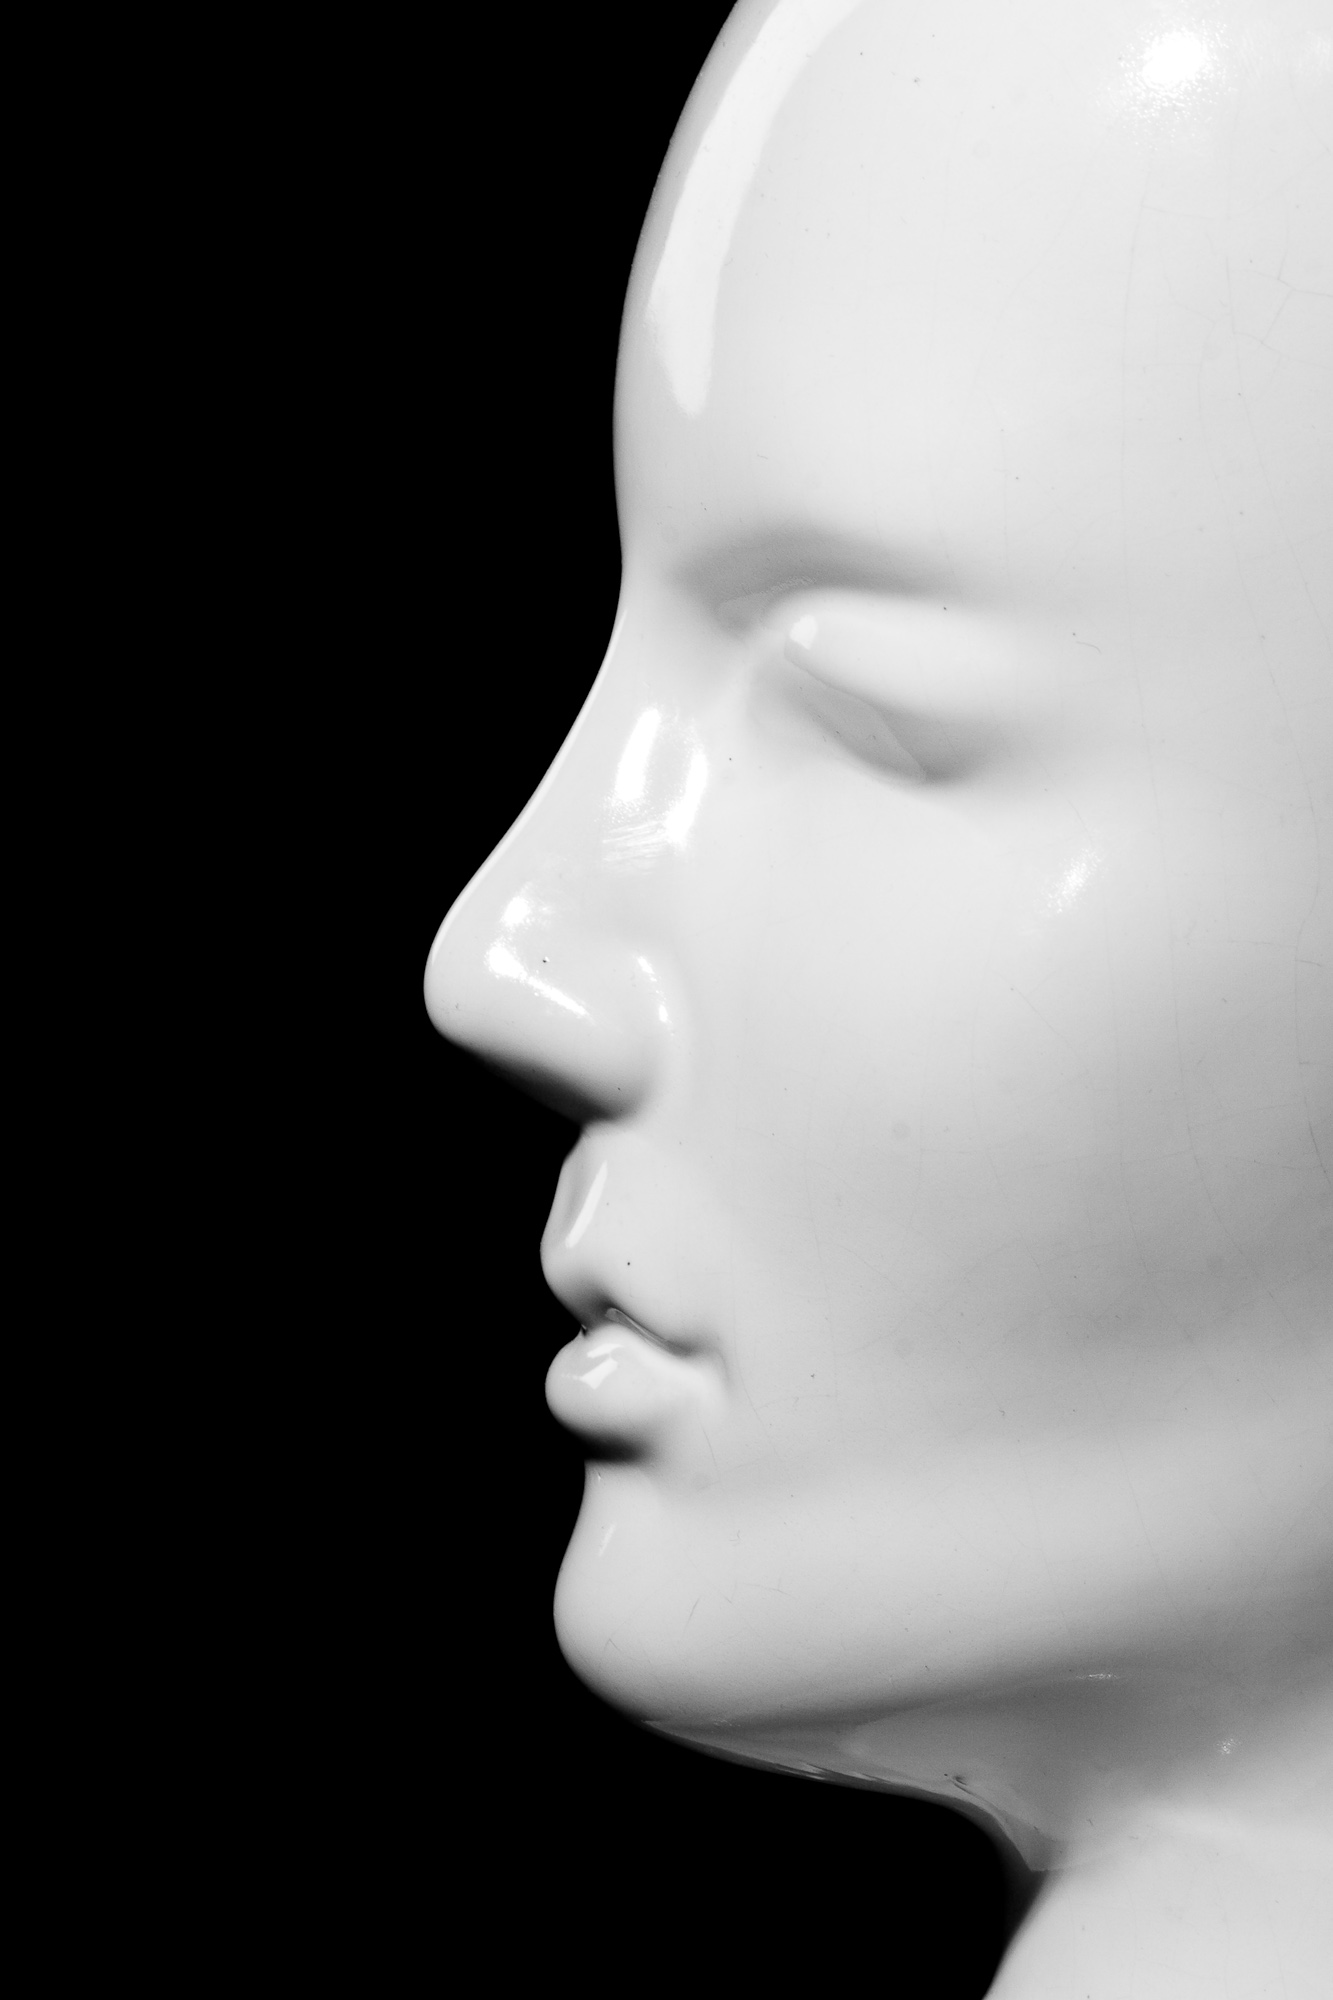 Mannequin close-up photo